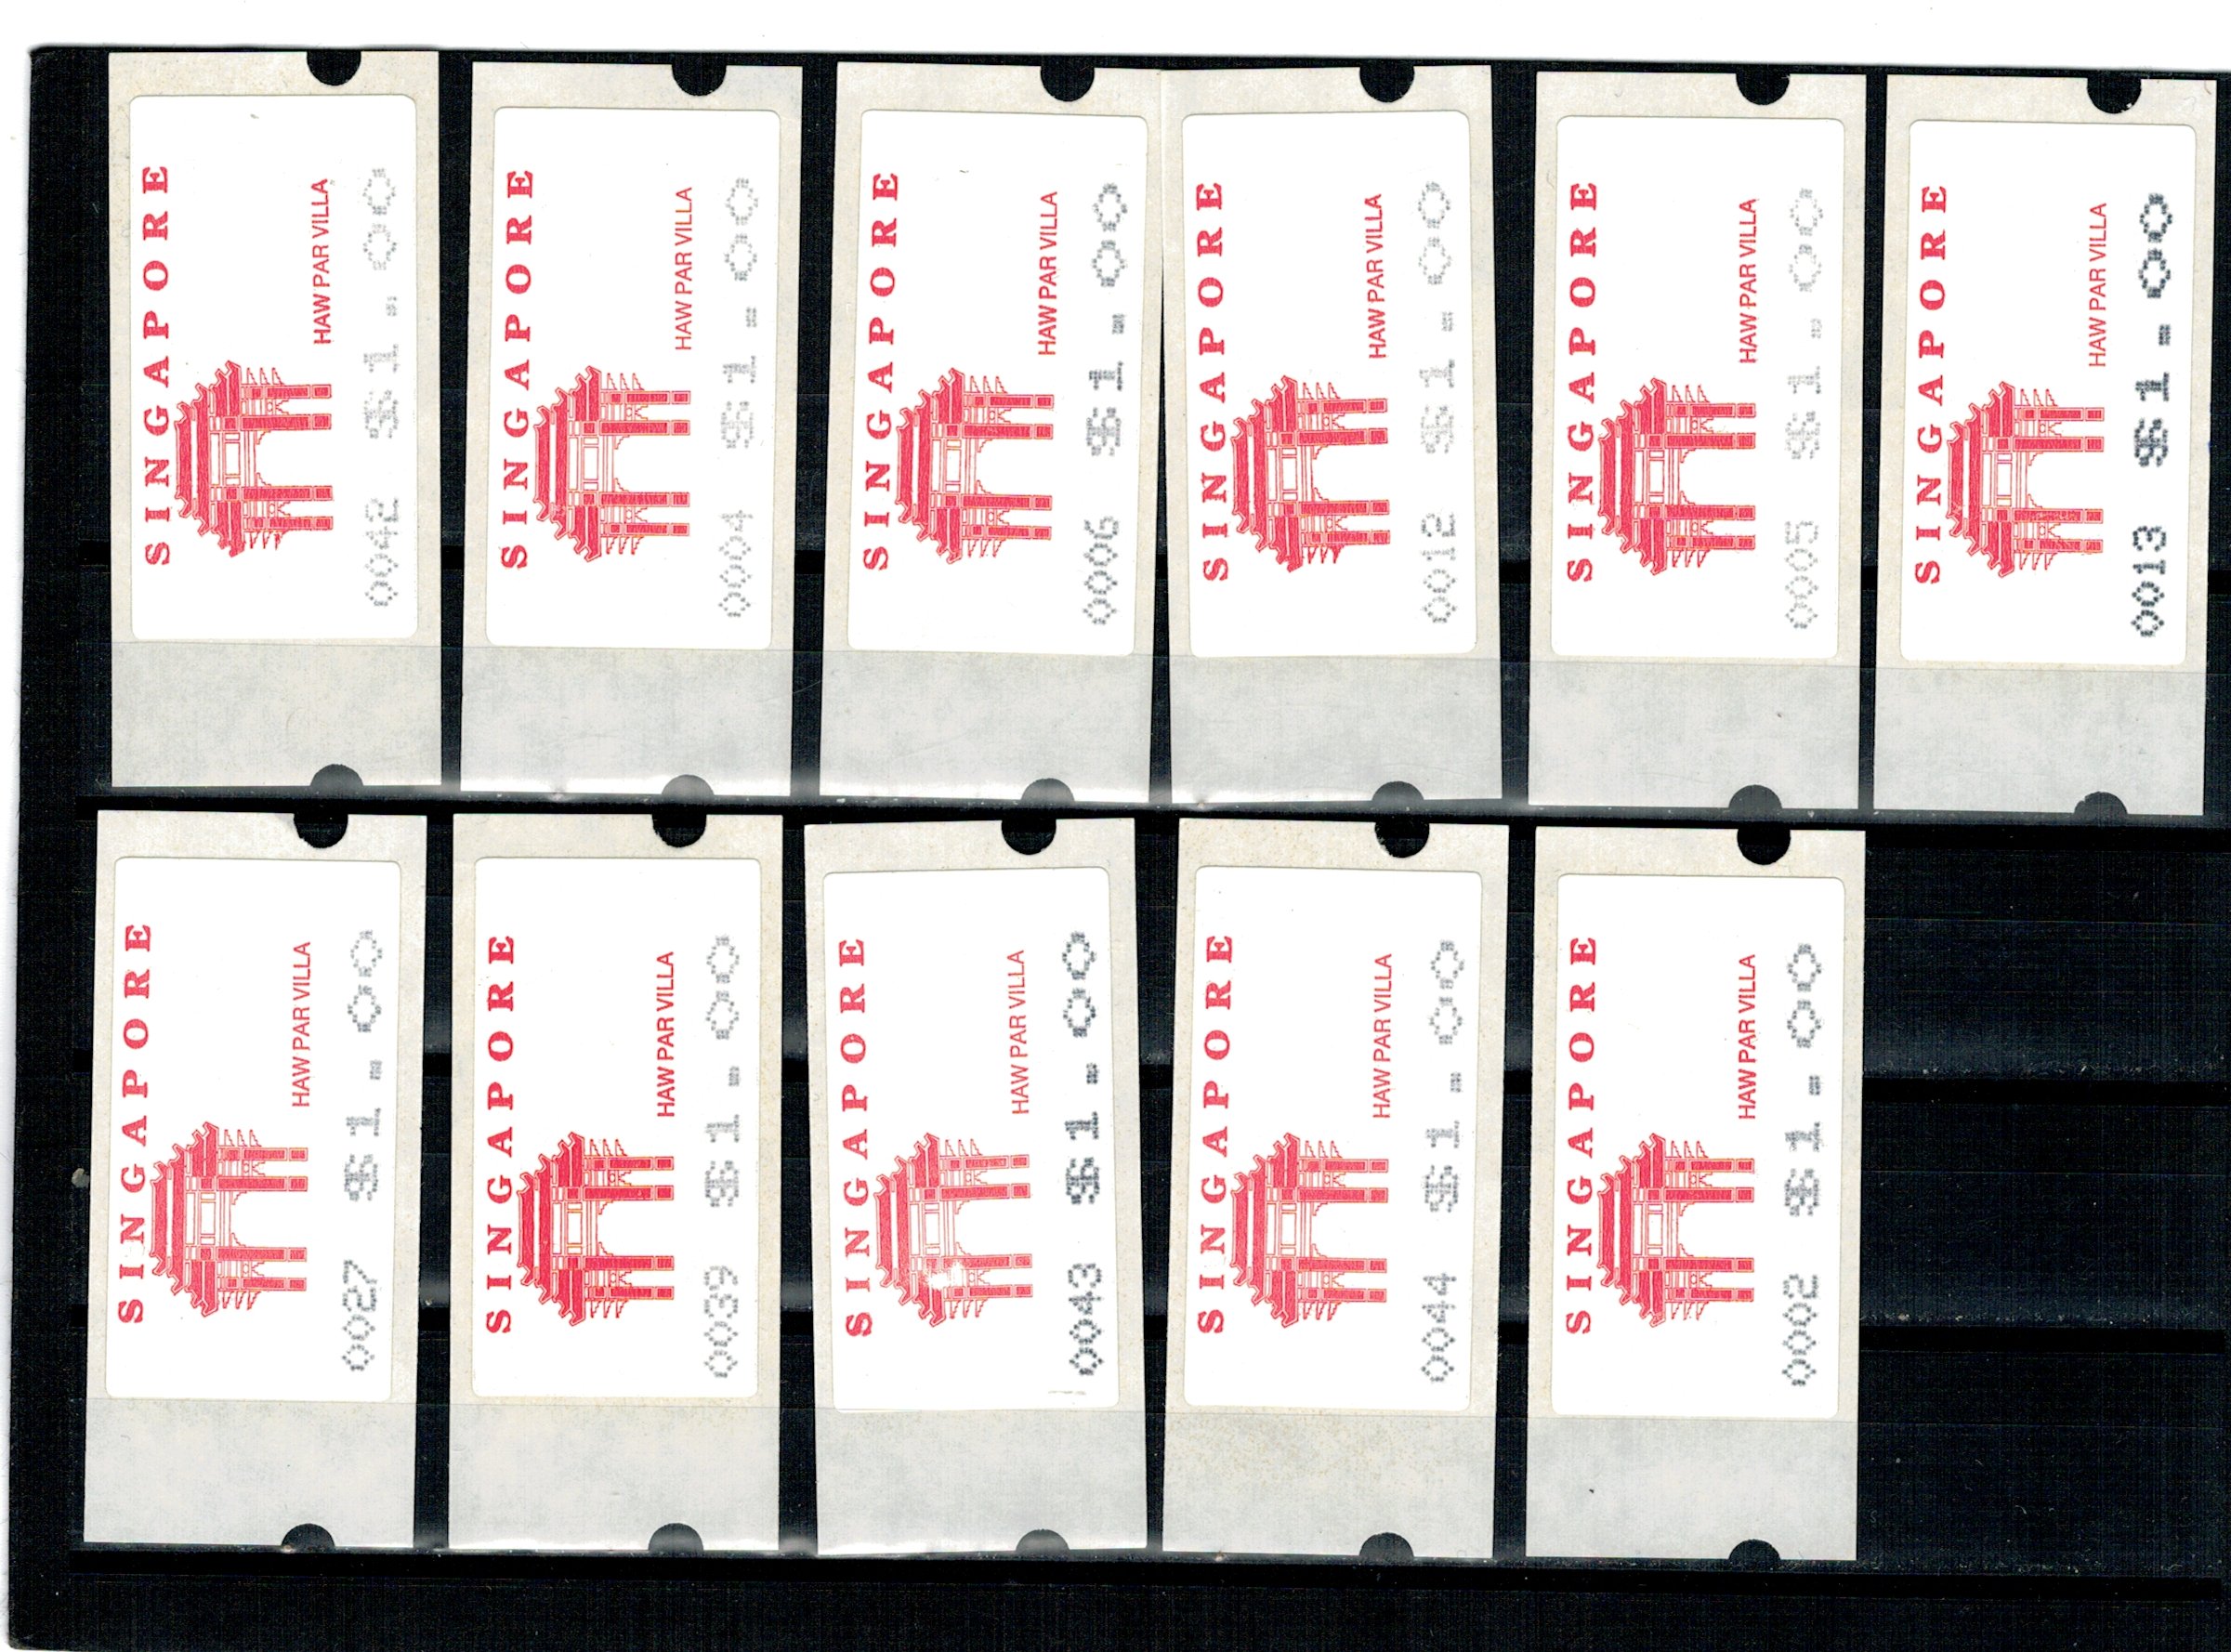 Singapore 1991 - Lot timbre de automat, autocolante